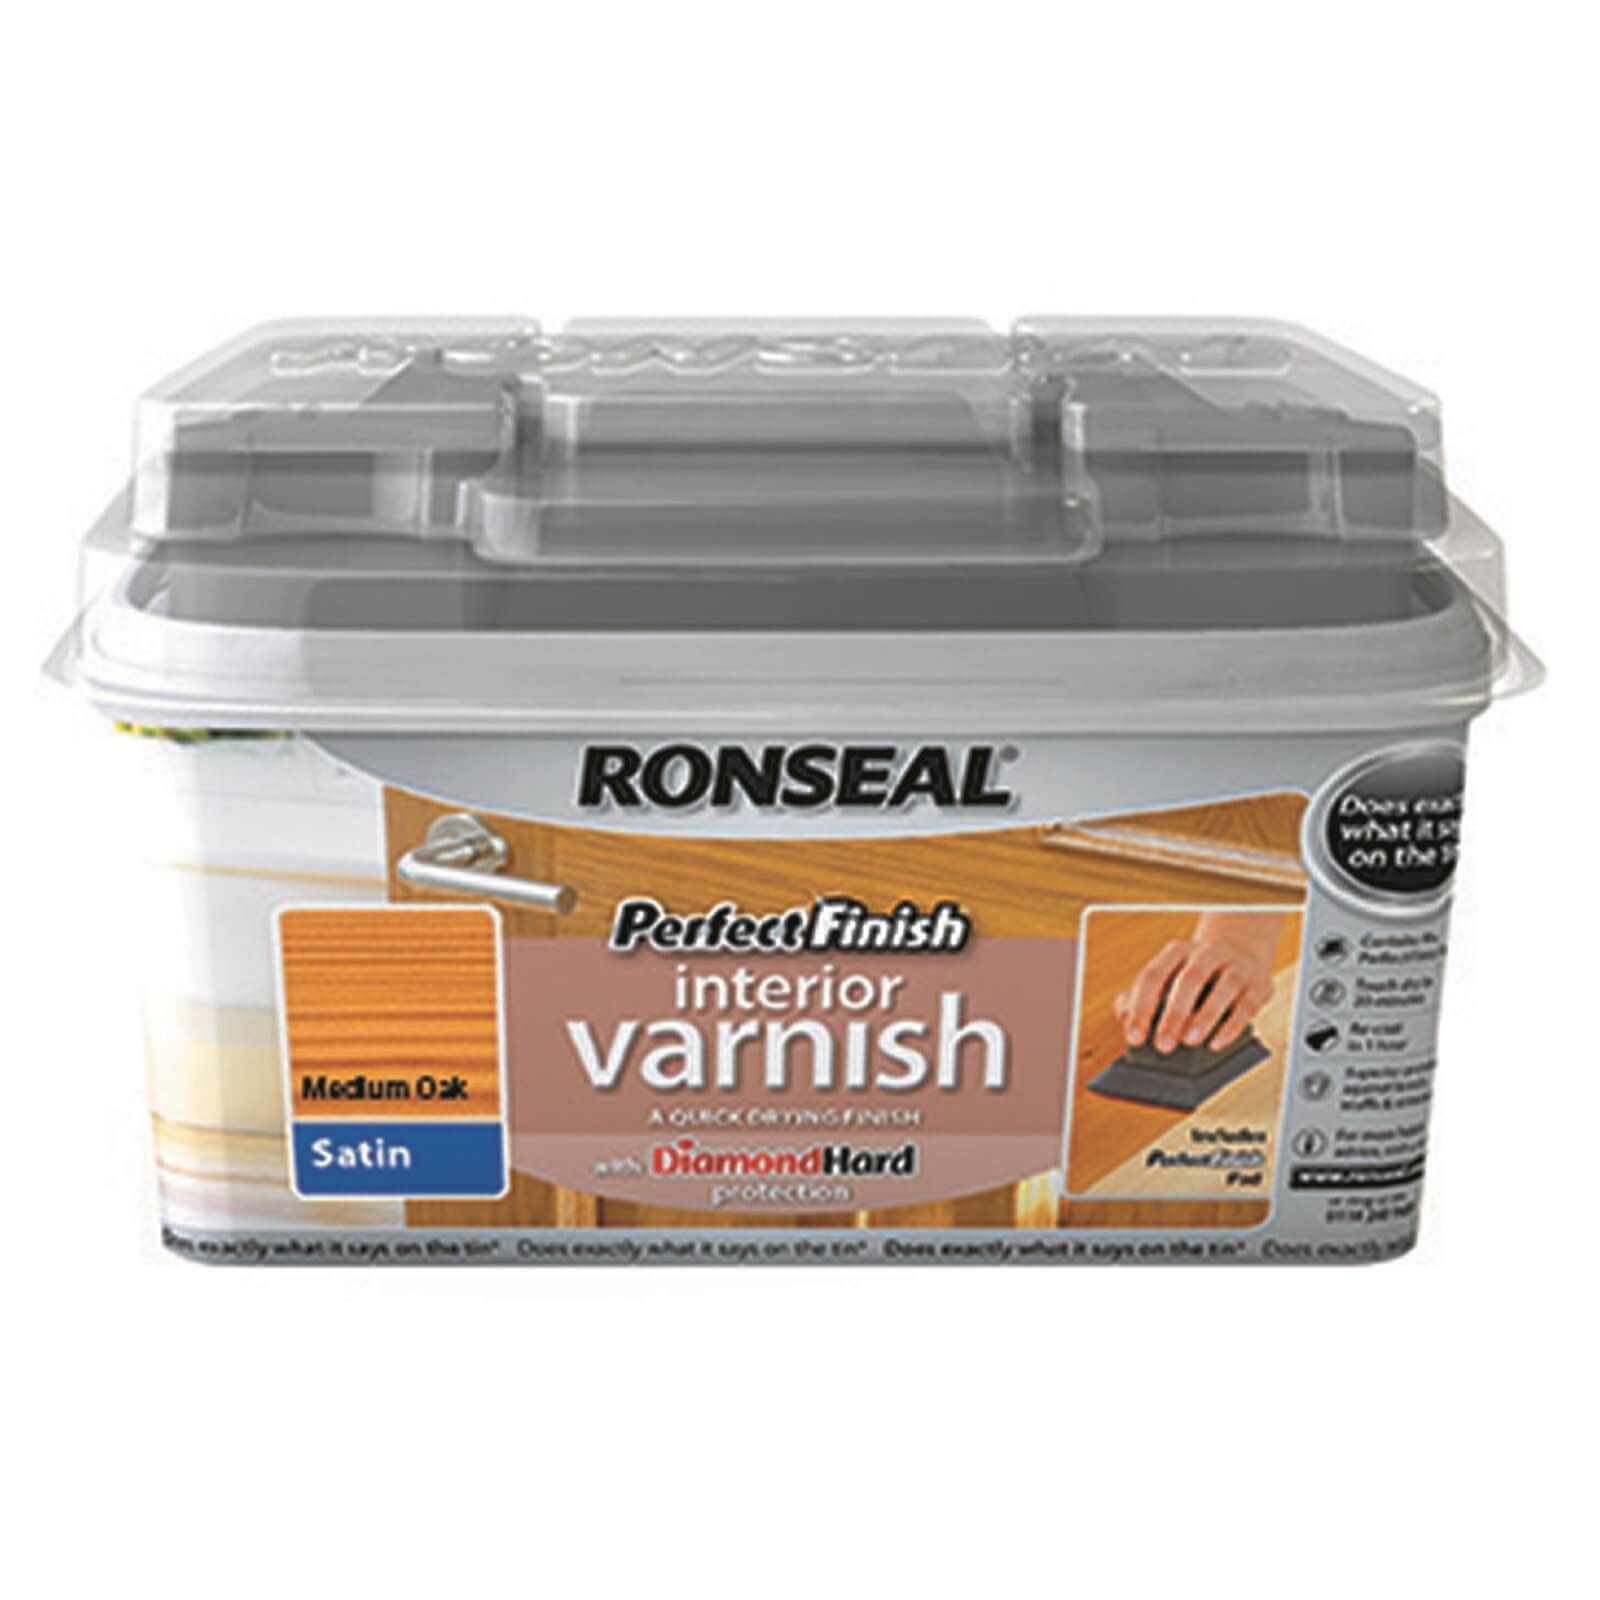 Ronseal Perfect Finish Interior Varnish - Medium Oak Satin 750ml